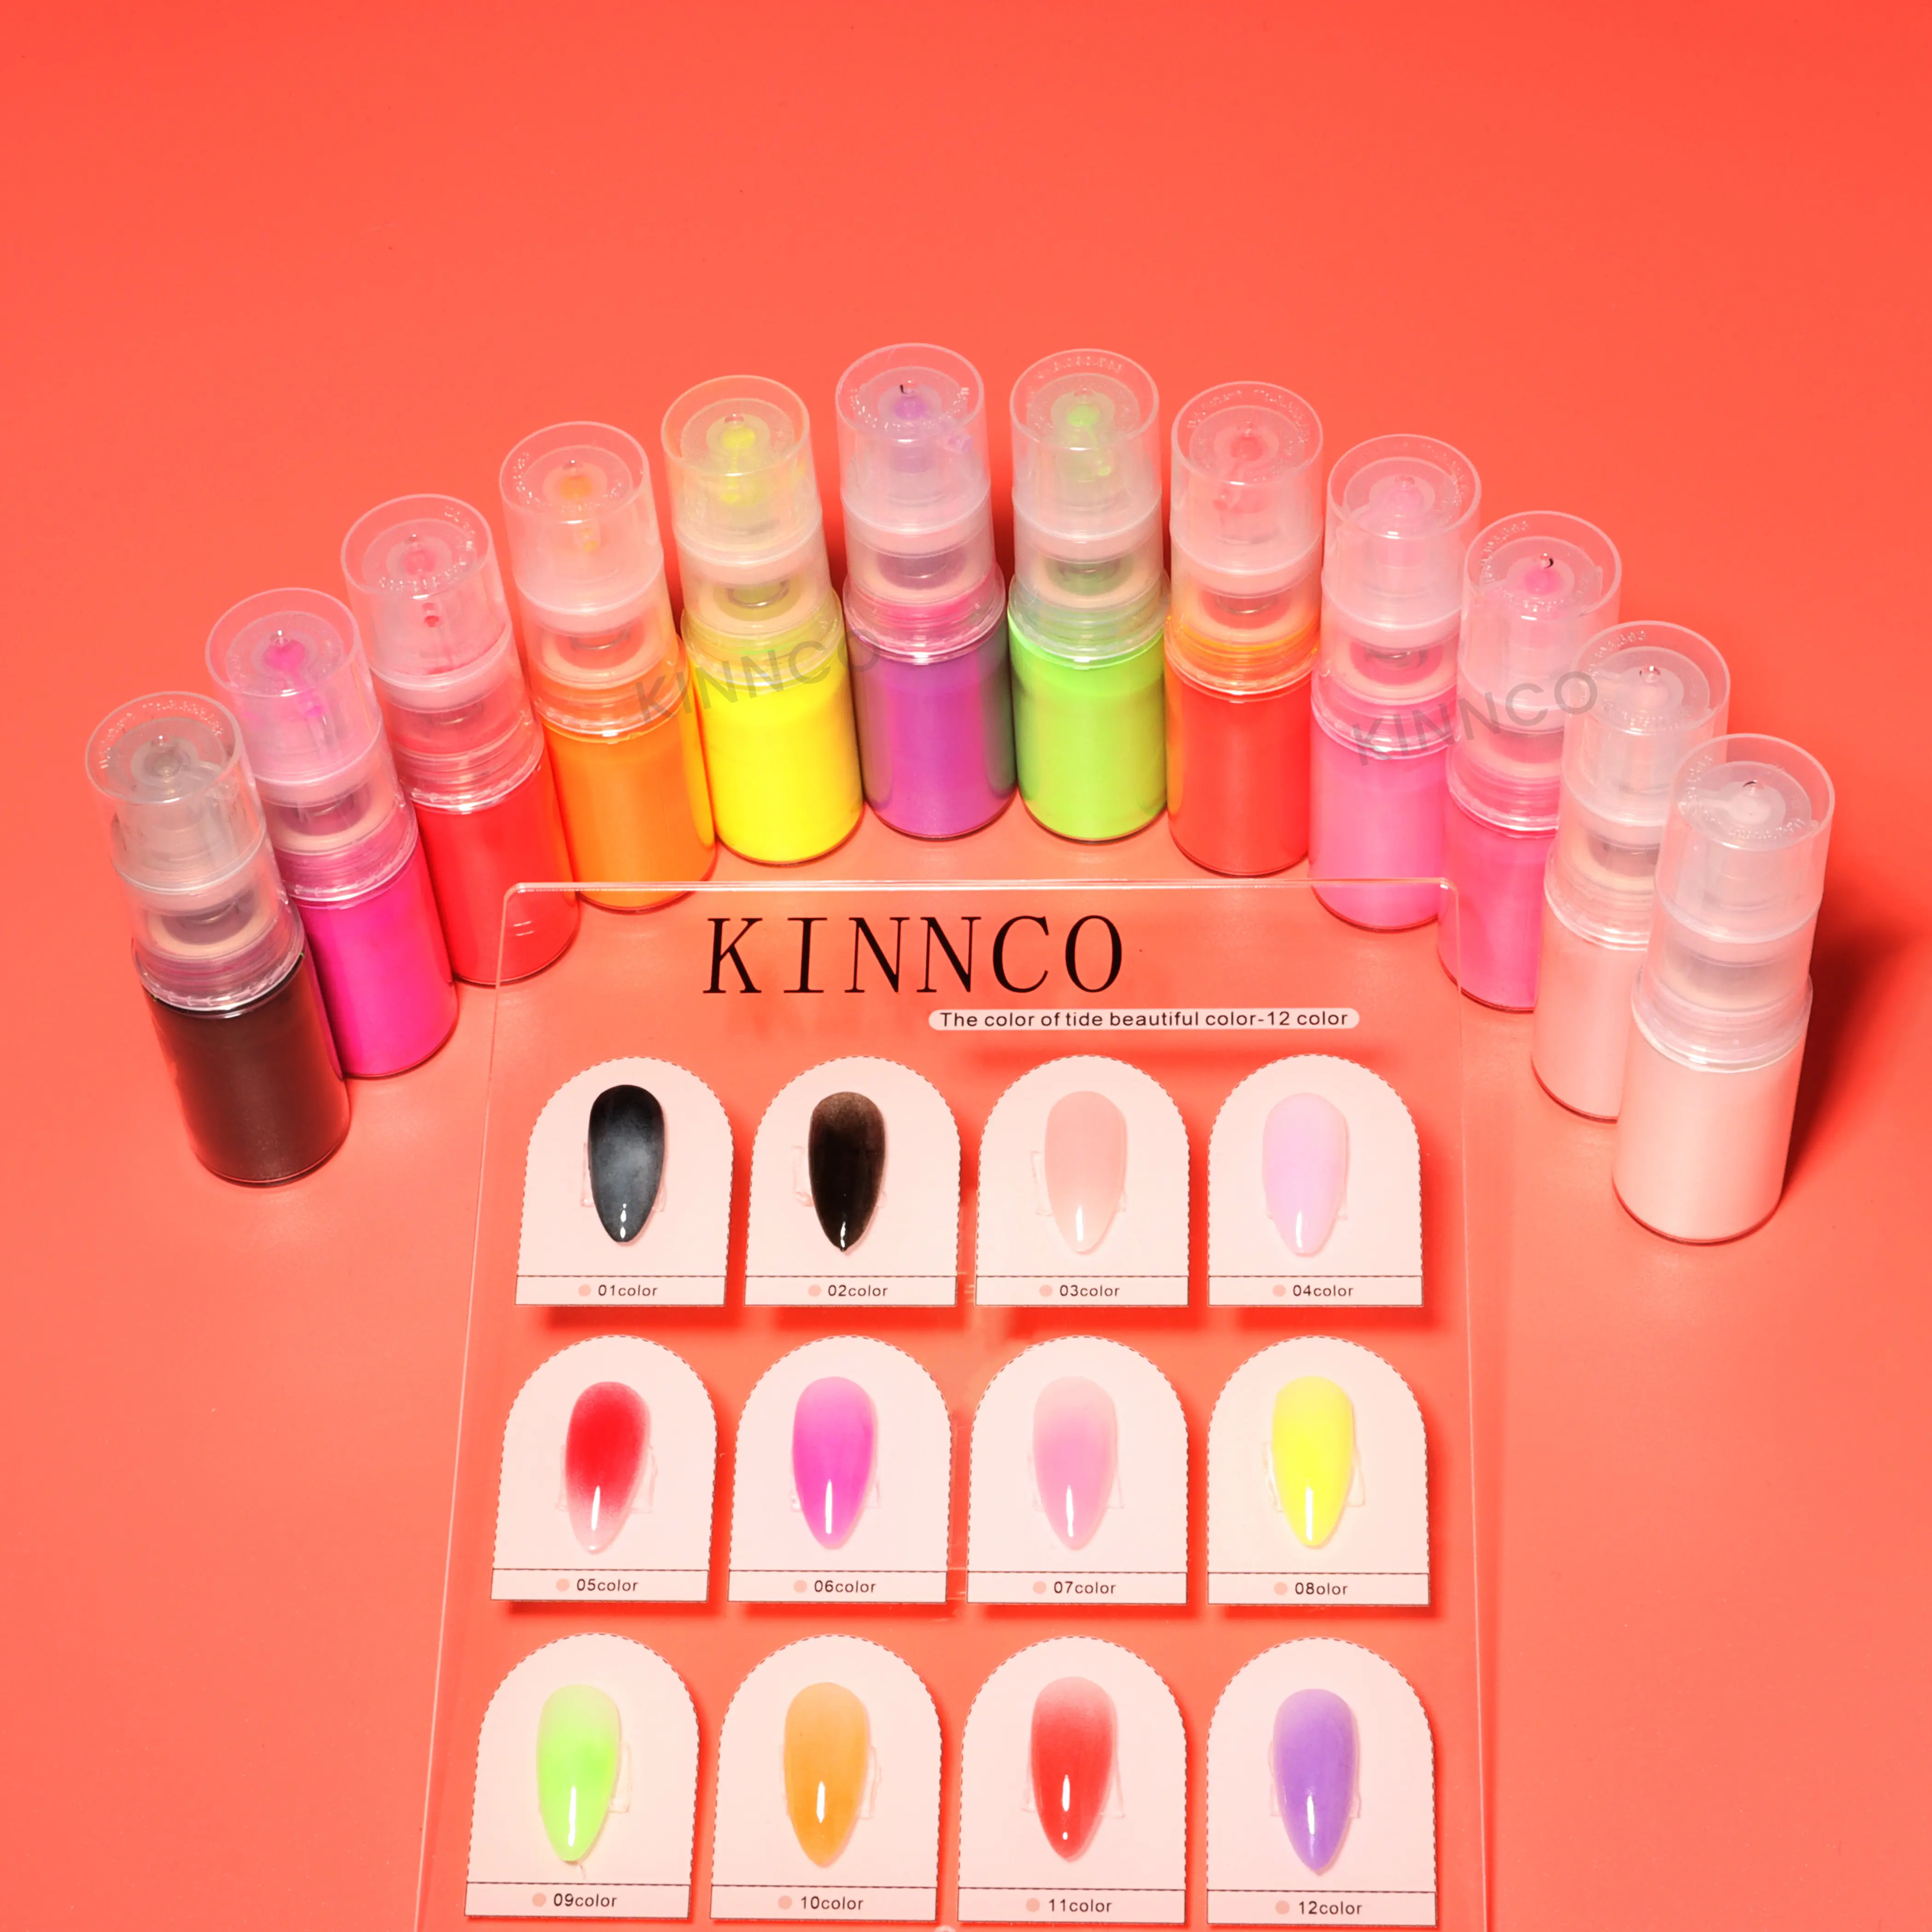 KINNCO Nouveaux produits populaires pour les ongles Spray ombré pour les ongles Facile à créer des dégradés parfaits Effet Couleurs Nail Art